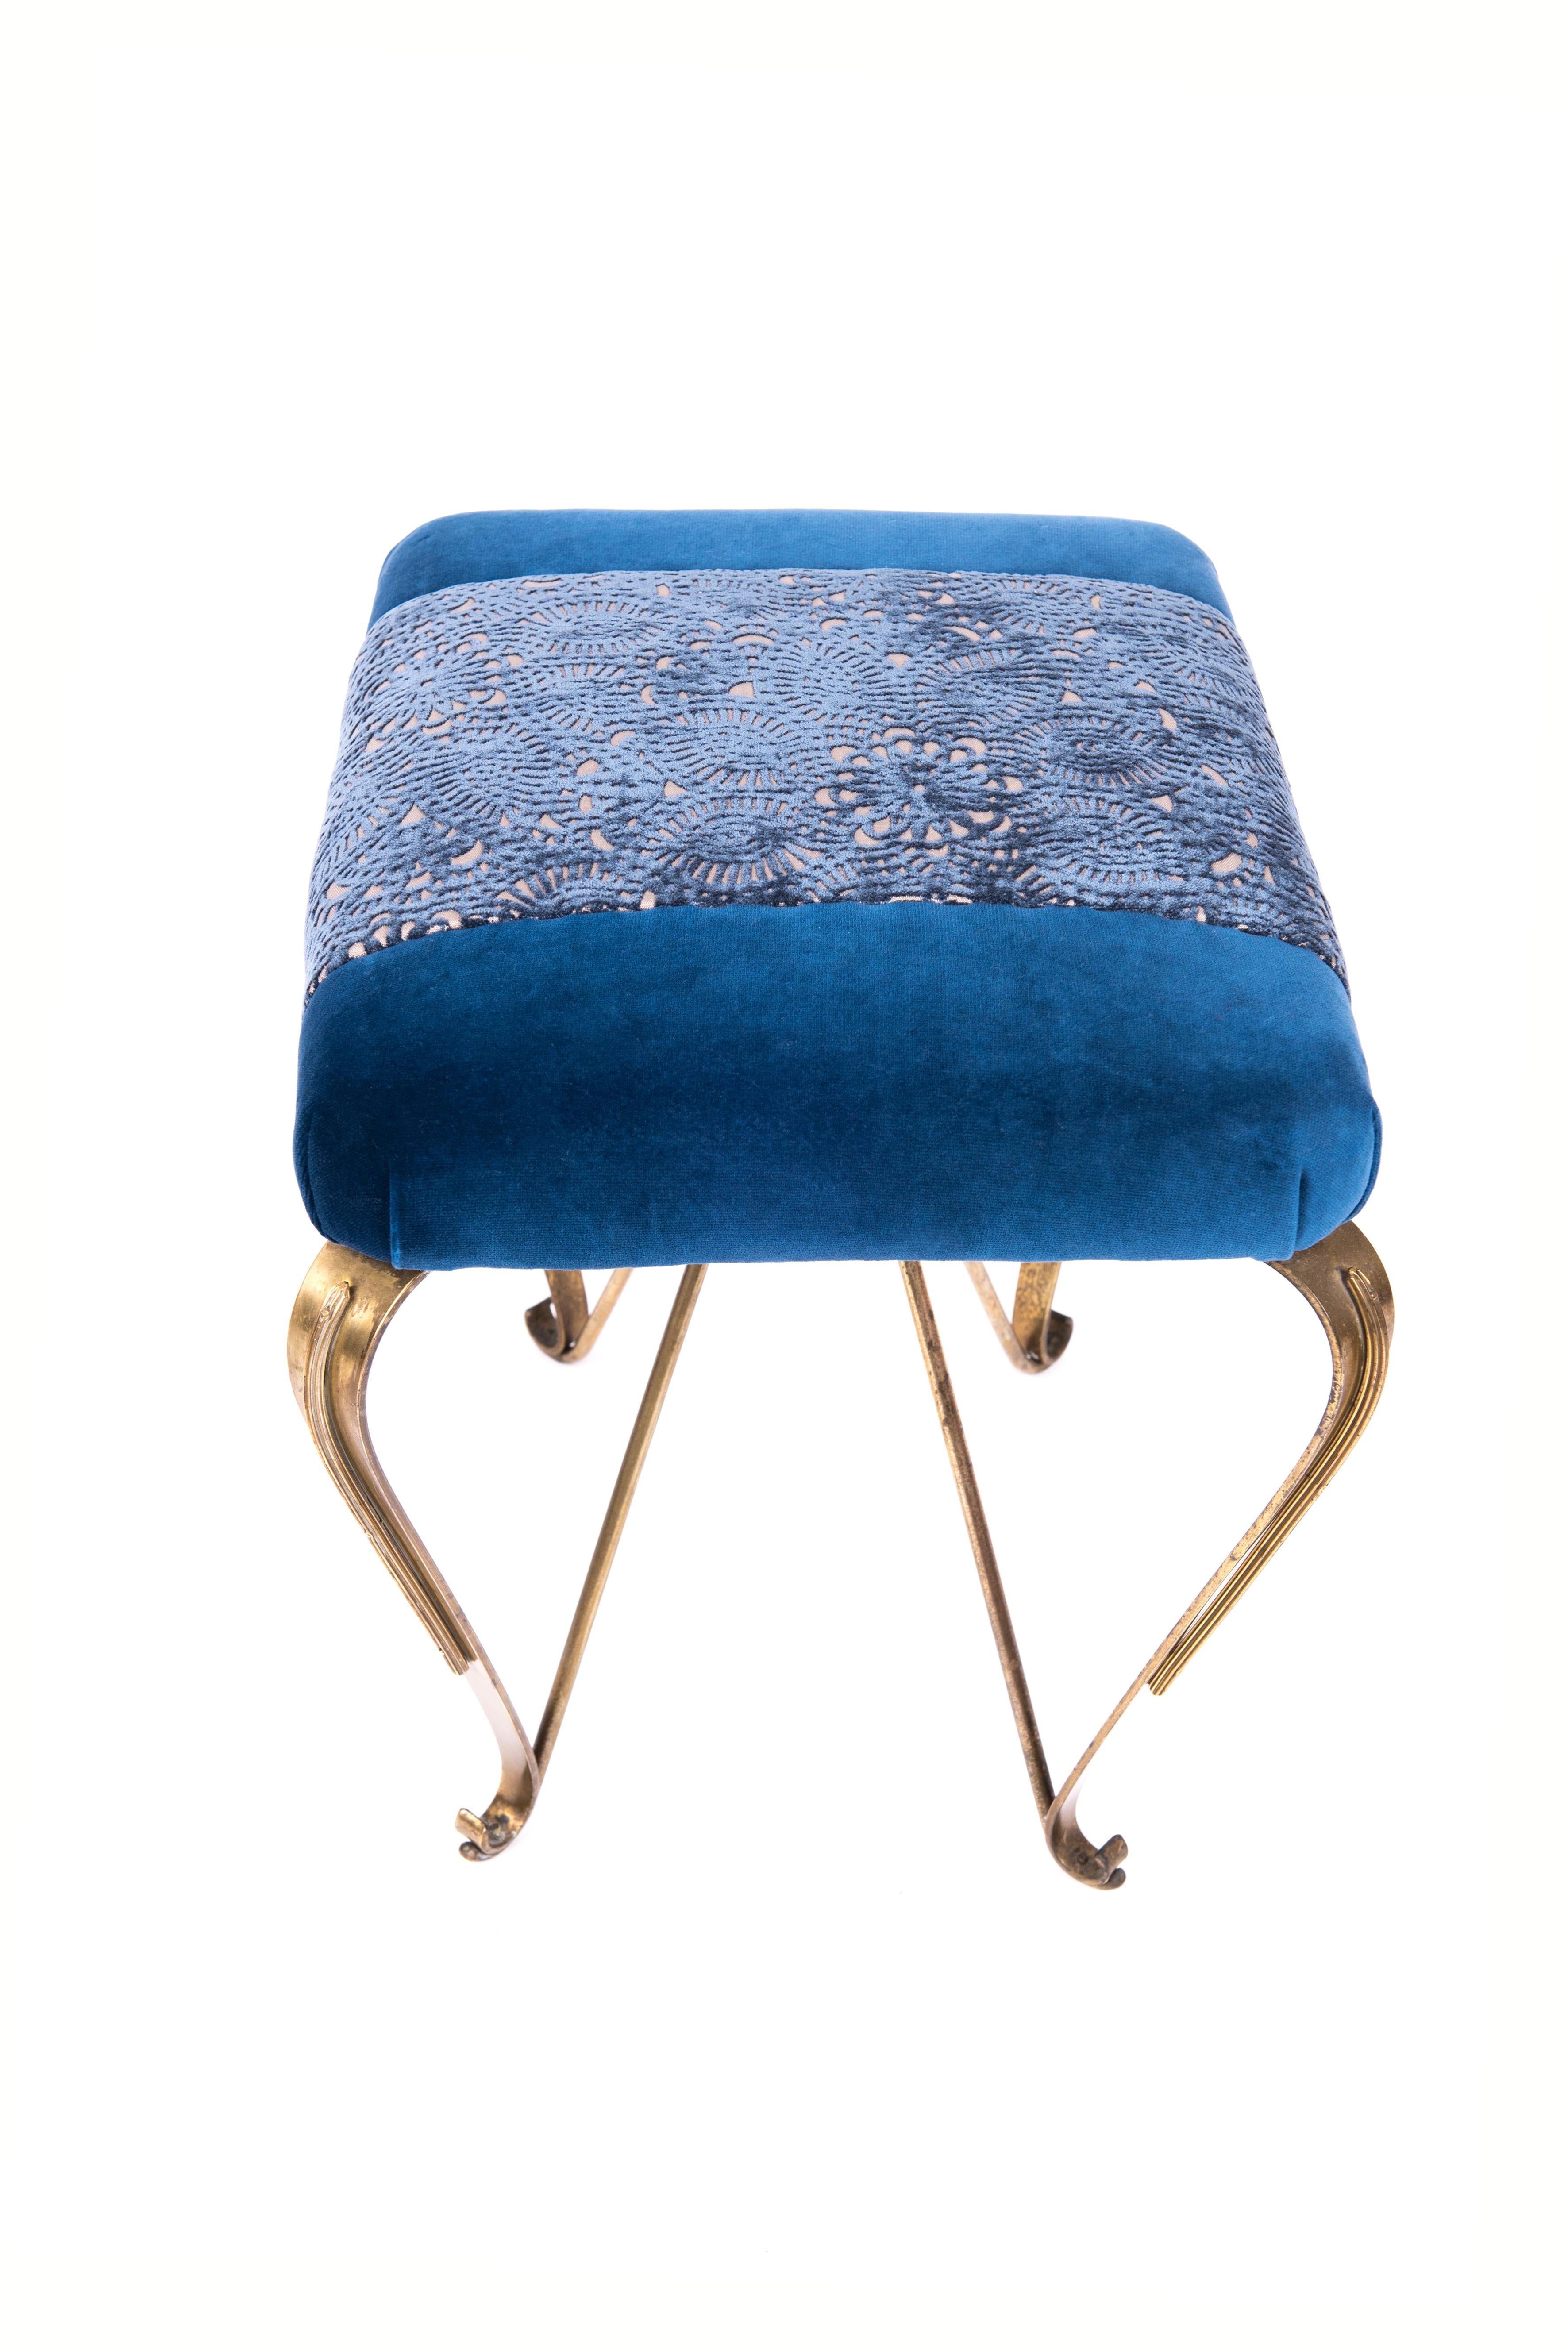 Pair of brass midcentury design Italian origin ottomans. New blue colored velvet upholstery, 1950, Italy.